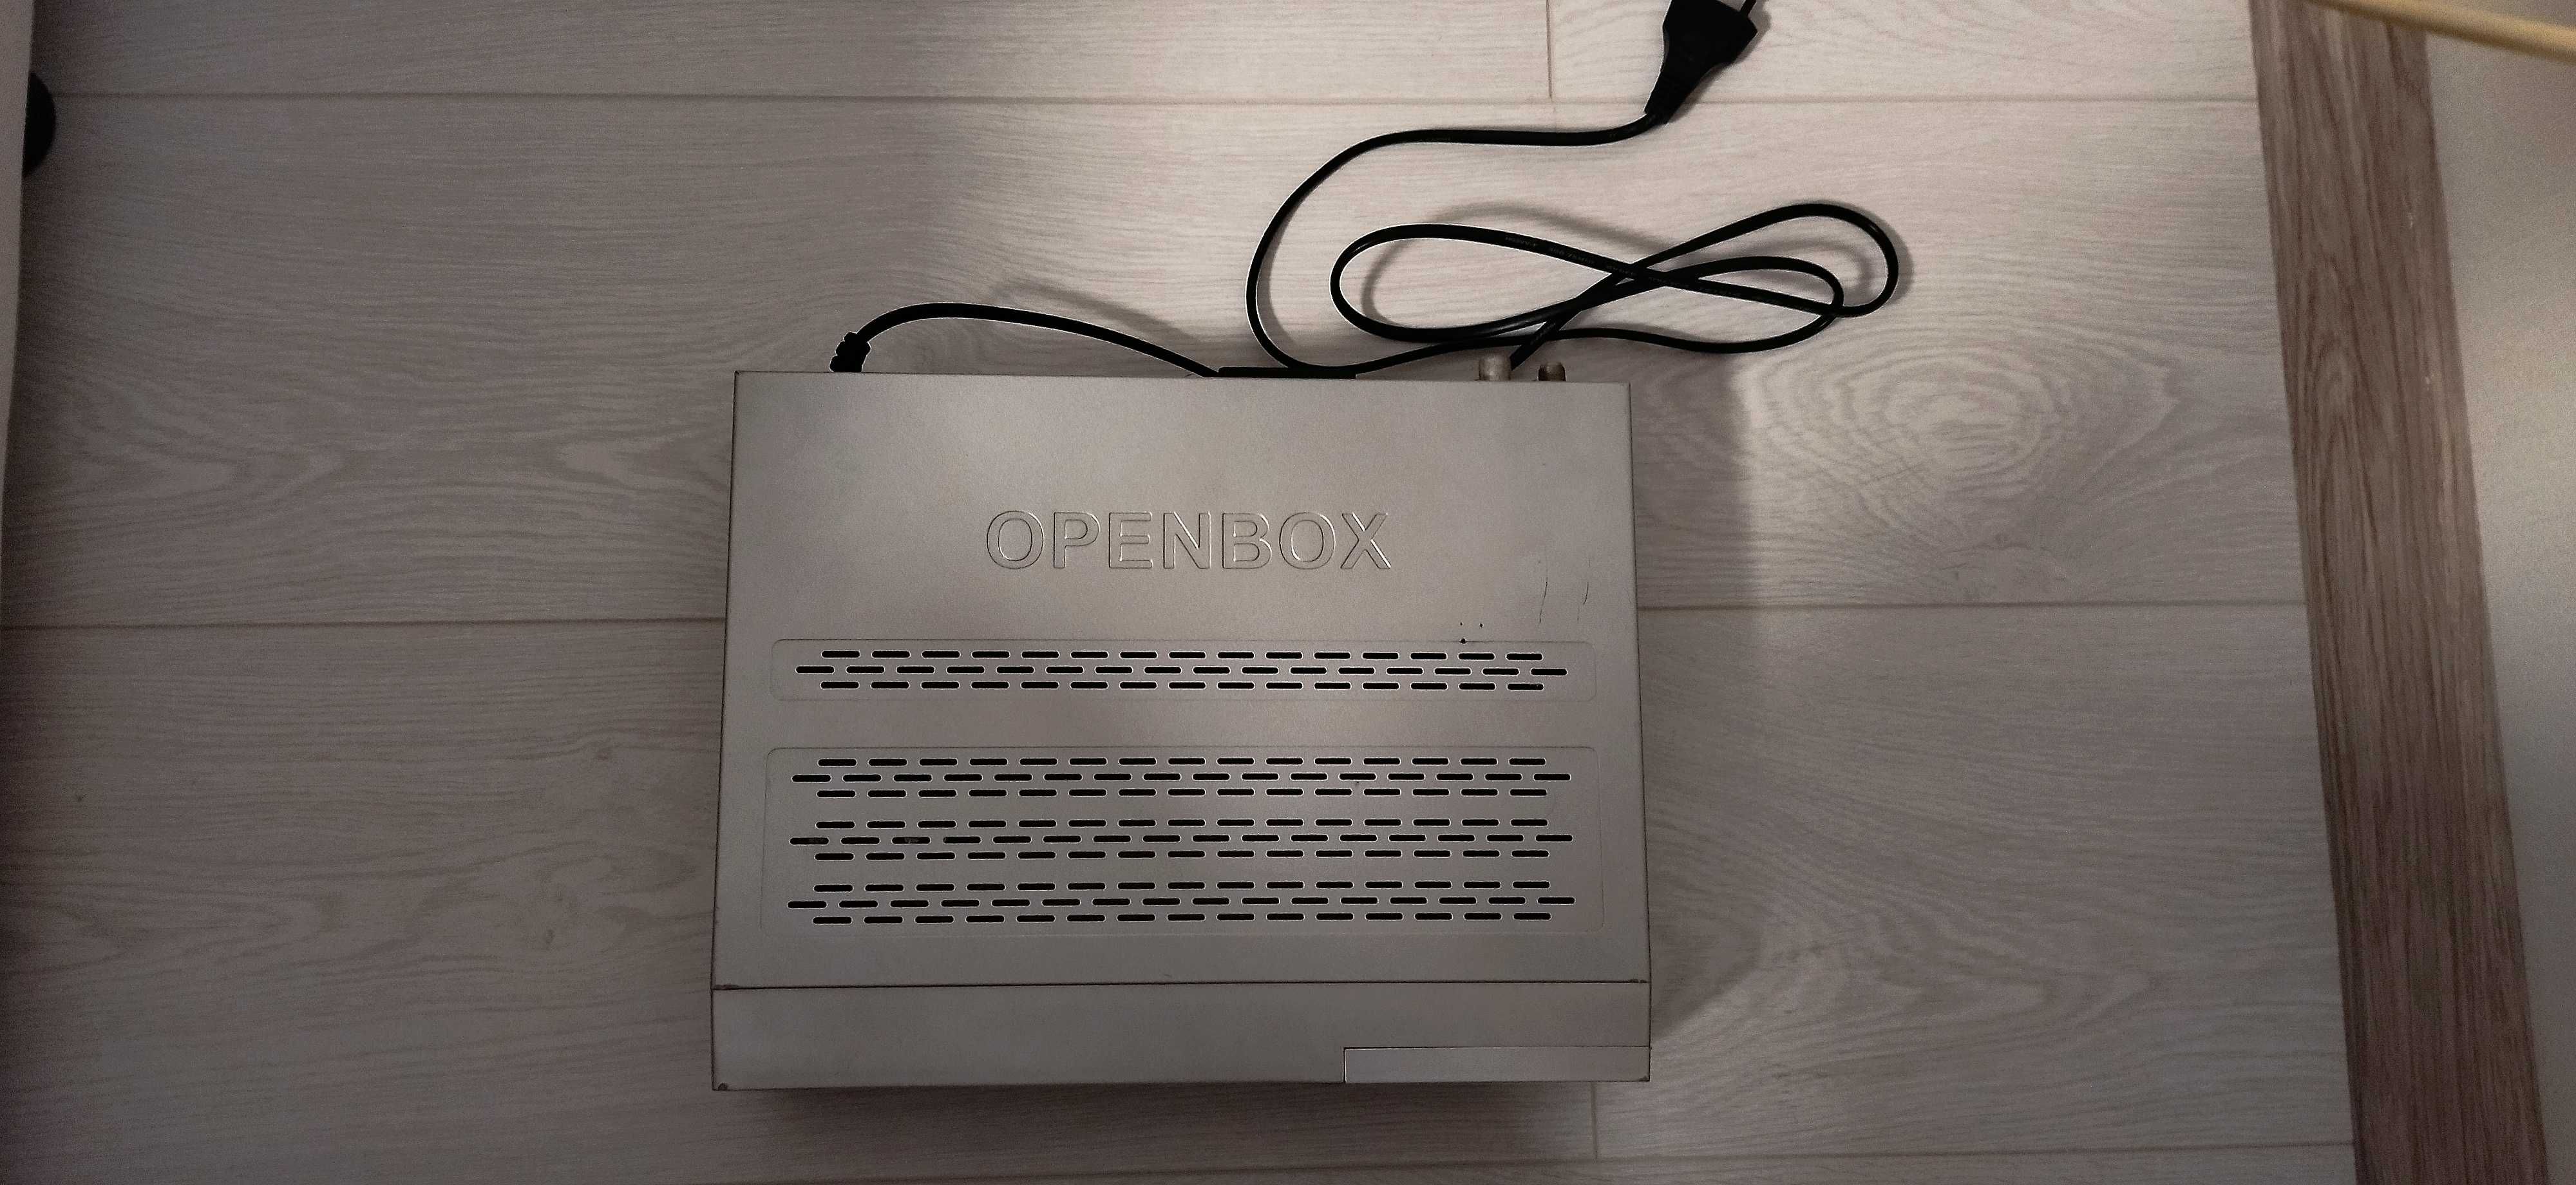 Спутниковый тюнер Openbox X-800